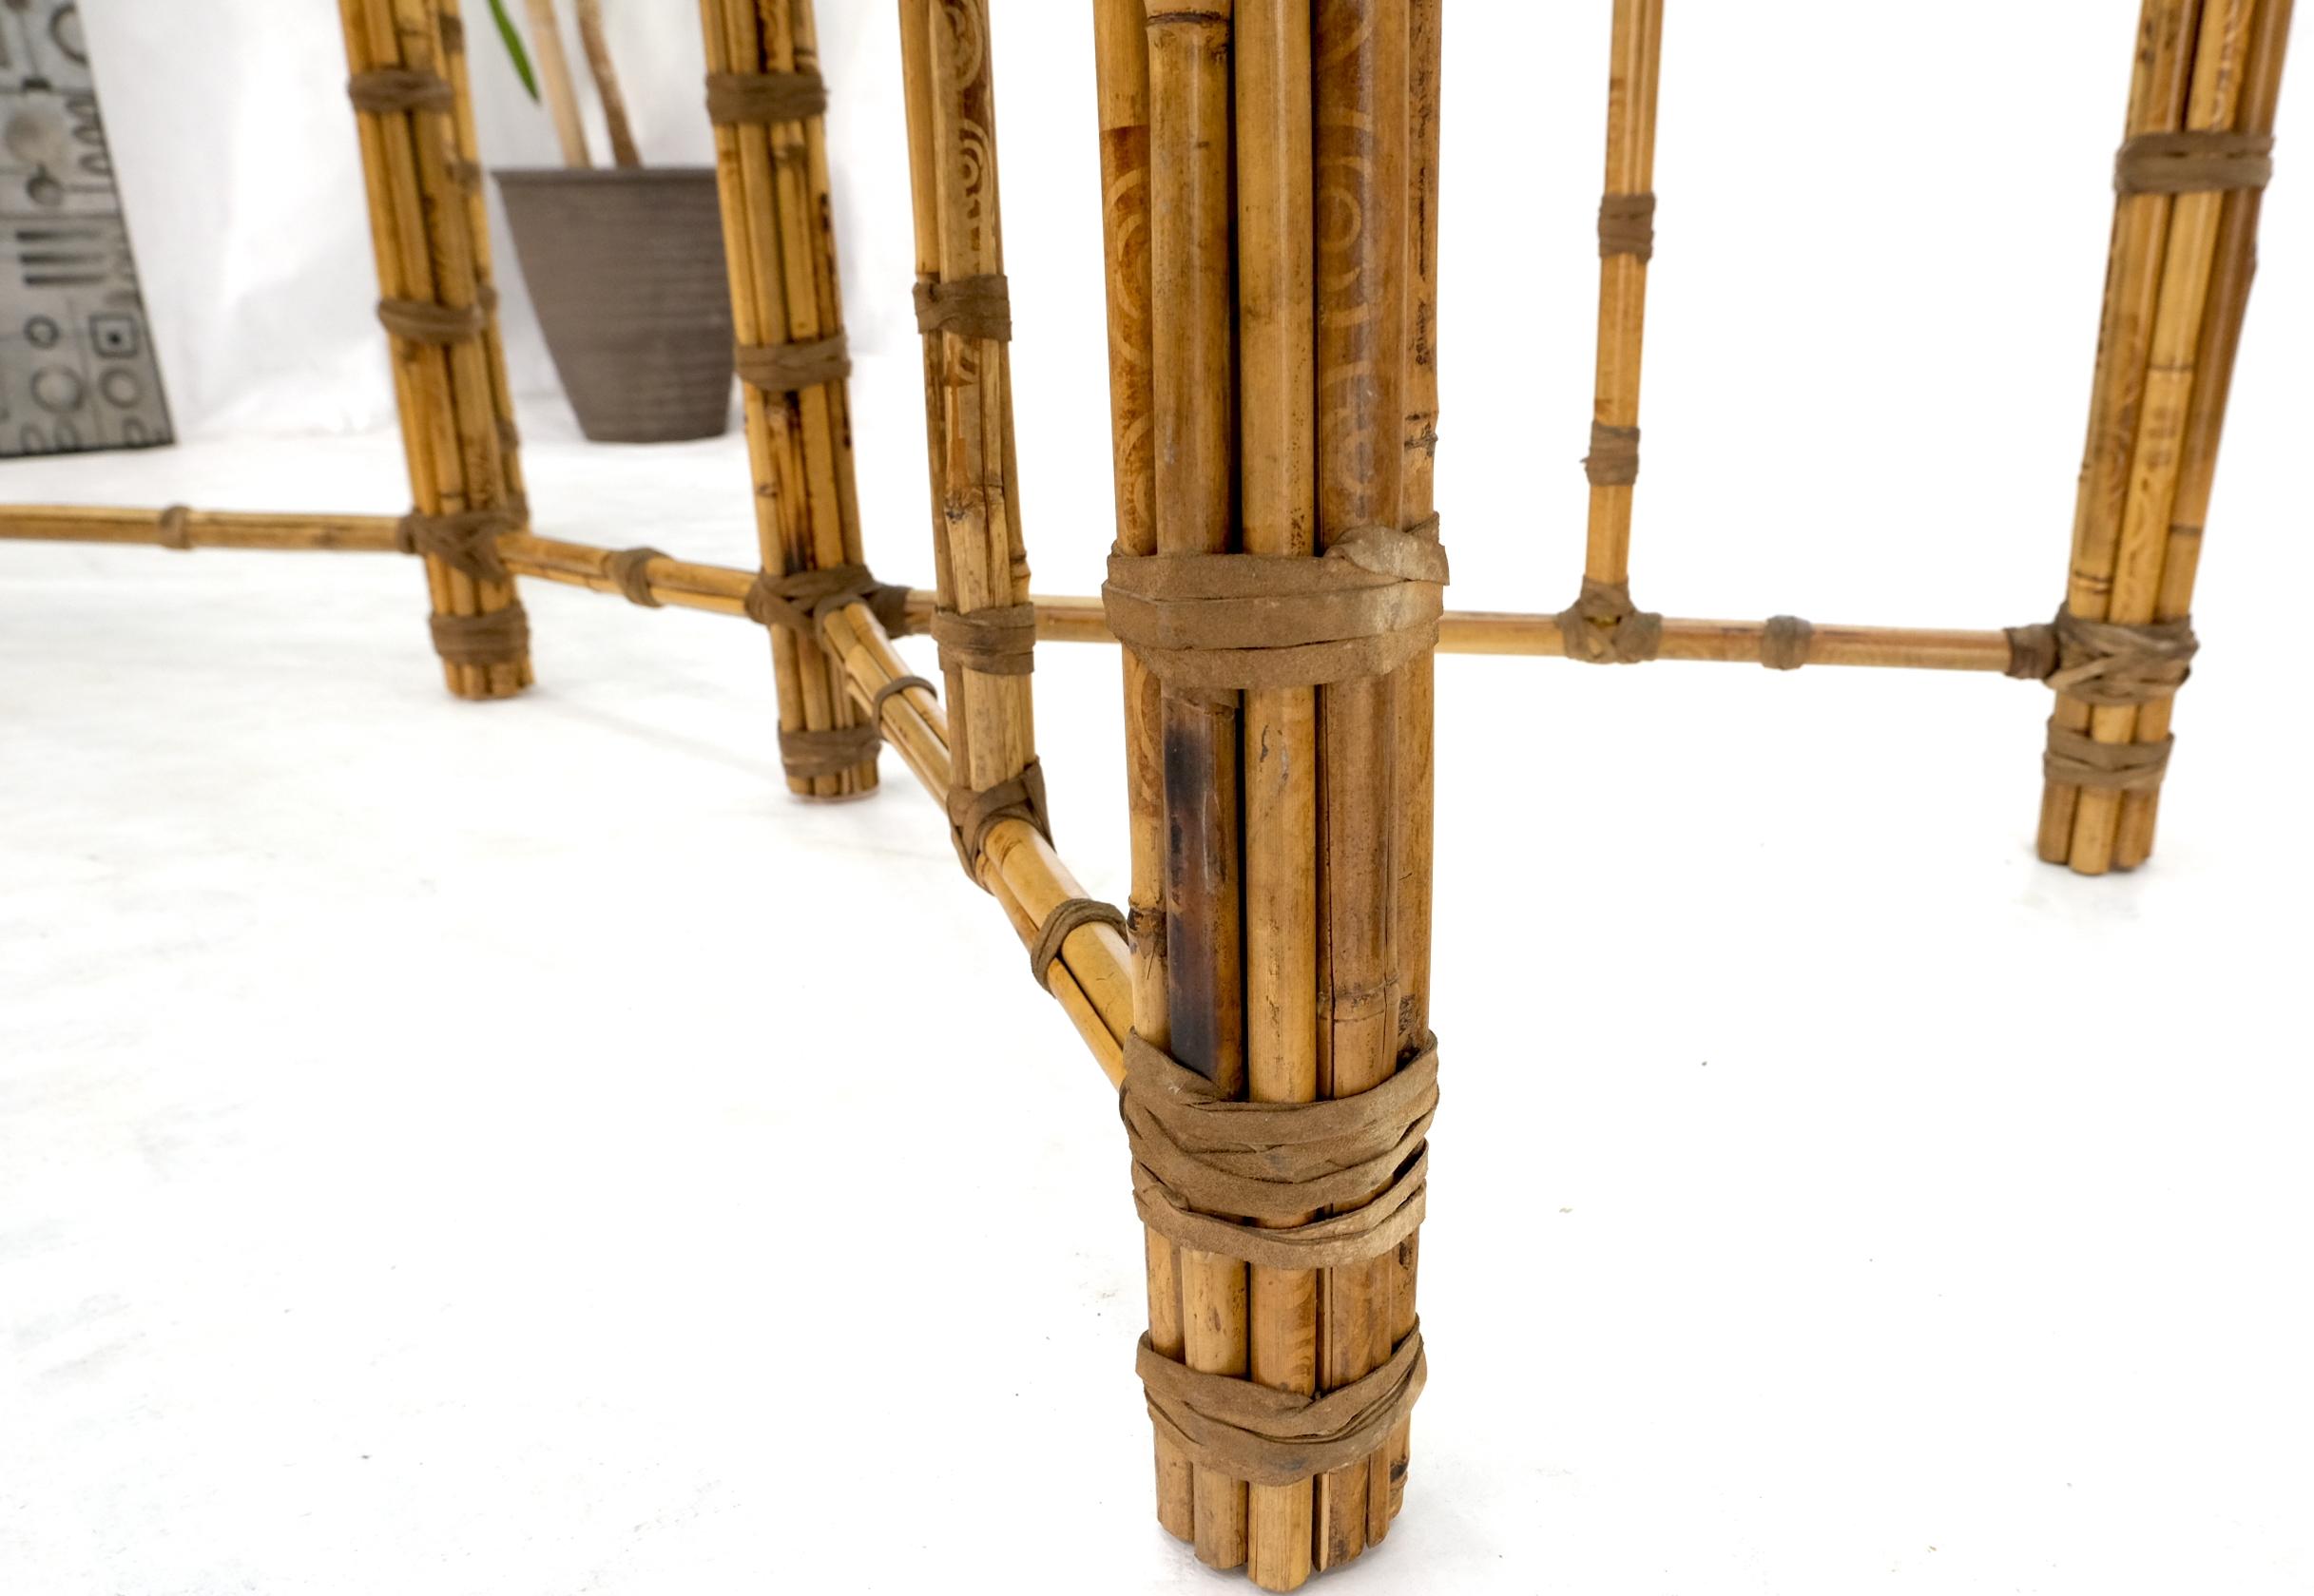 Grande table de conférence rectangulaire avec plateau en verre, cadre en bambou et lanières en cuir, signée McGuire.